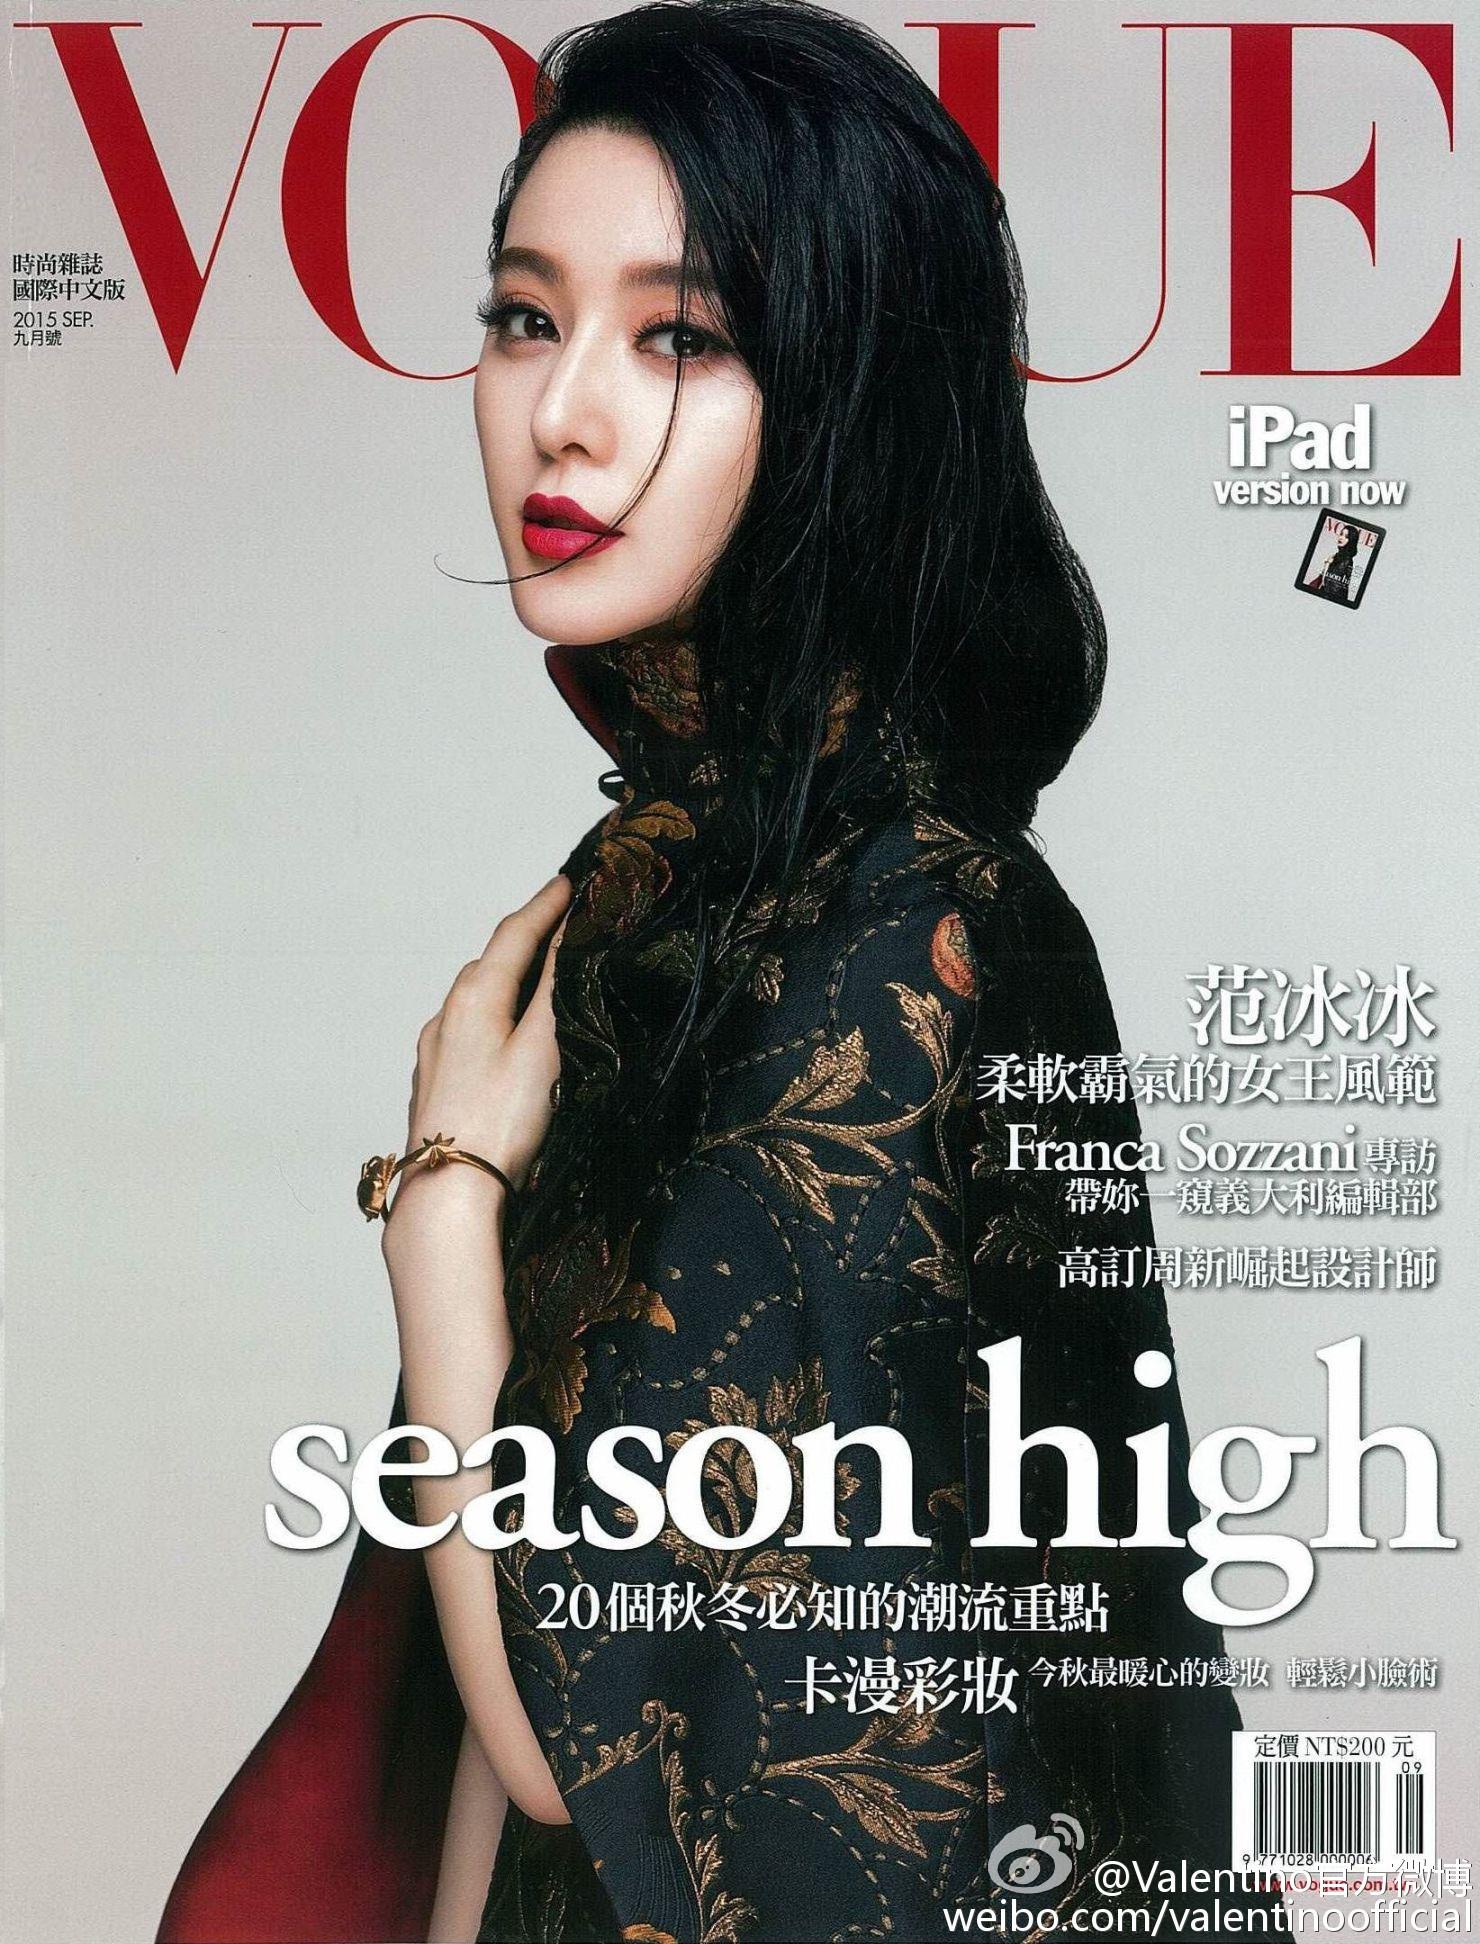 Hi Fan Bingbing on Twitter: "Vogue Taiwan September 2015: Fan  image